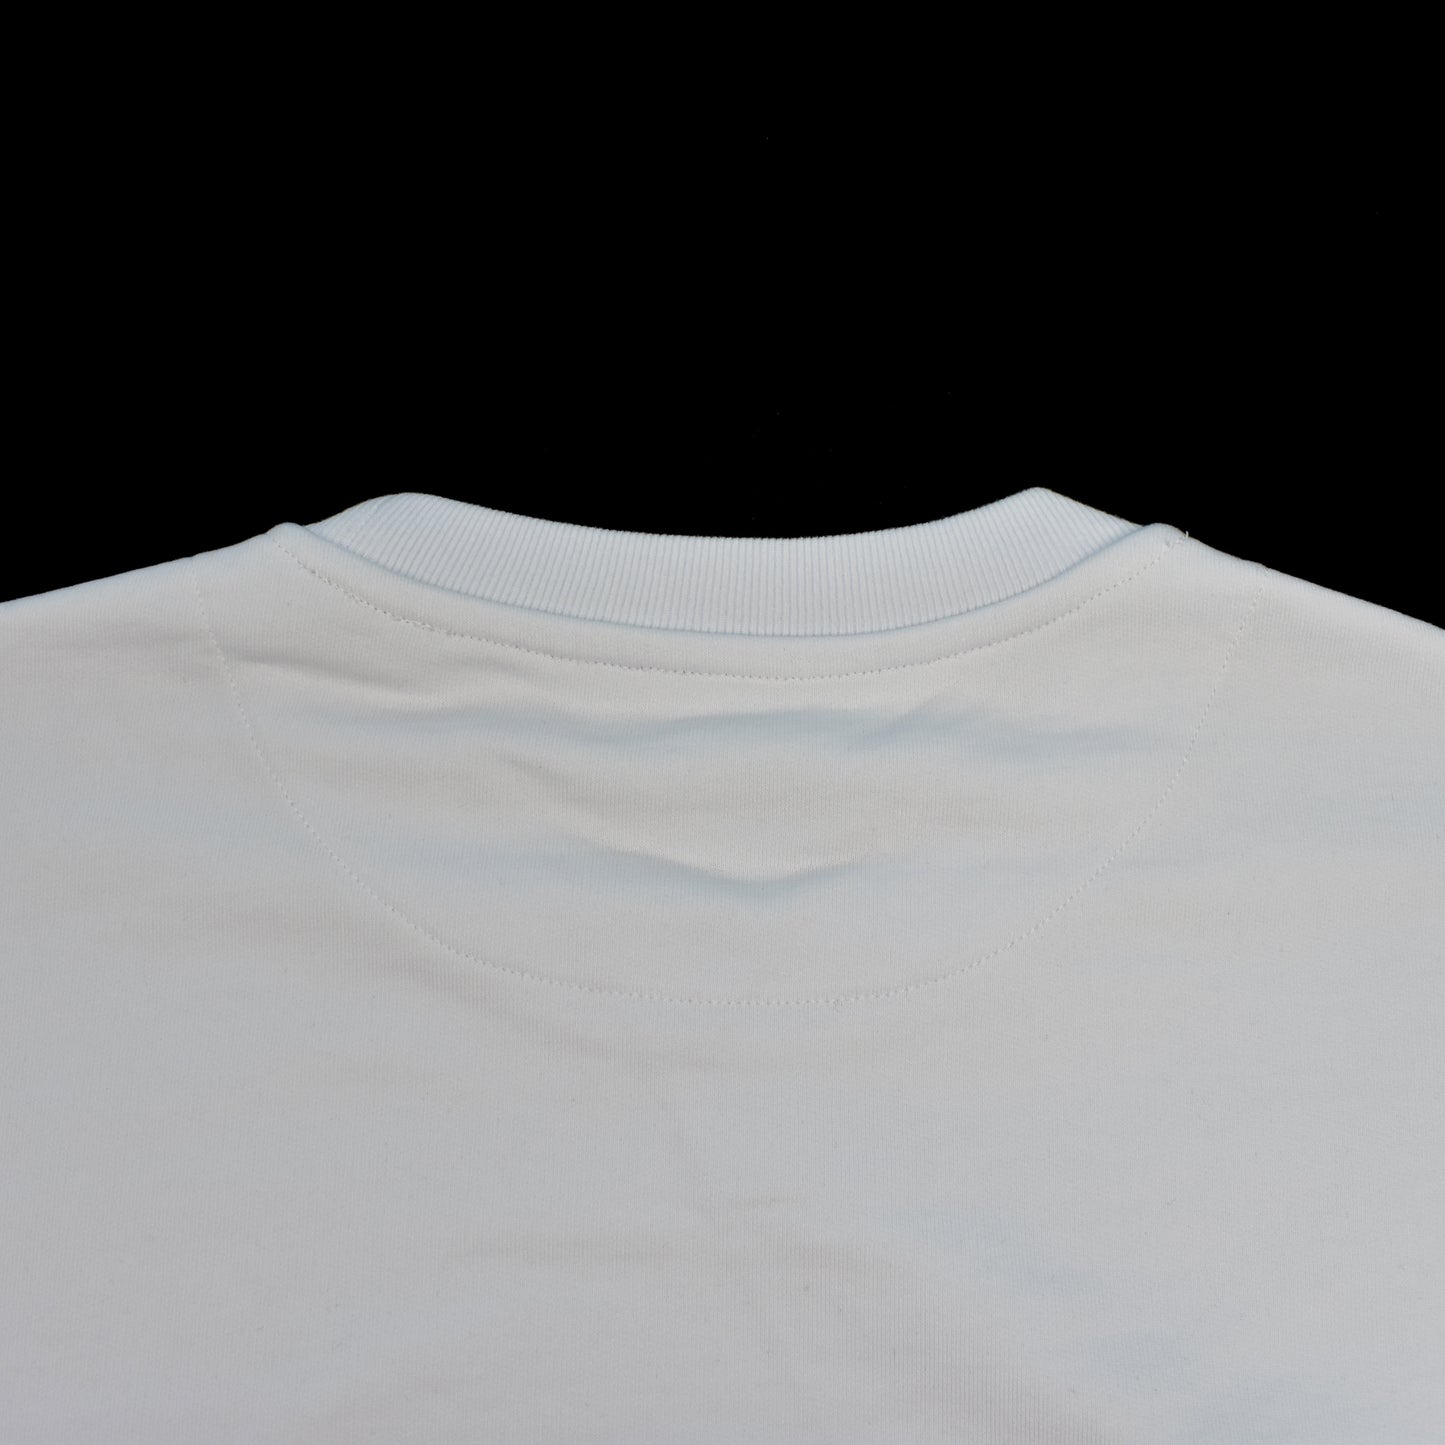 Palace - White Correct Logo Sweatshirt